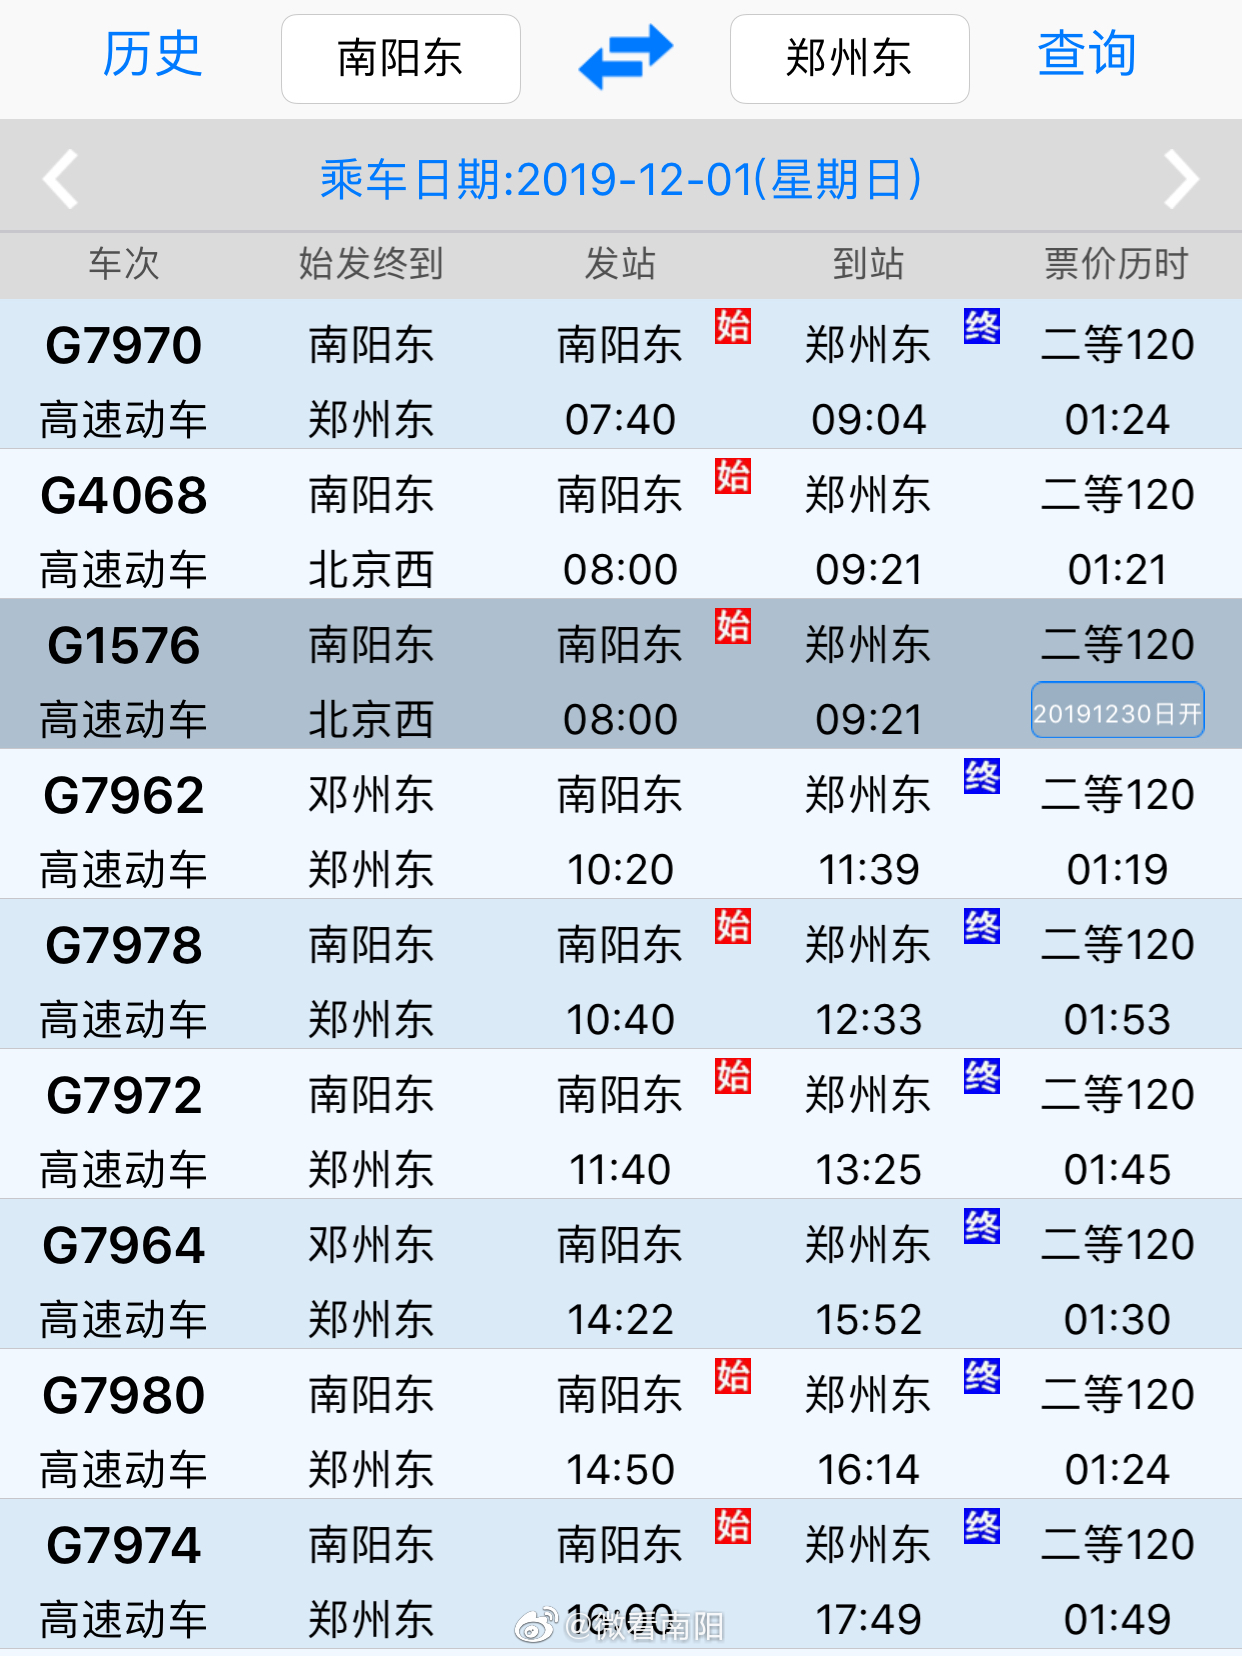 郑渝高铁的票价公布:南阳到郑州二等座120元